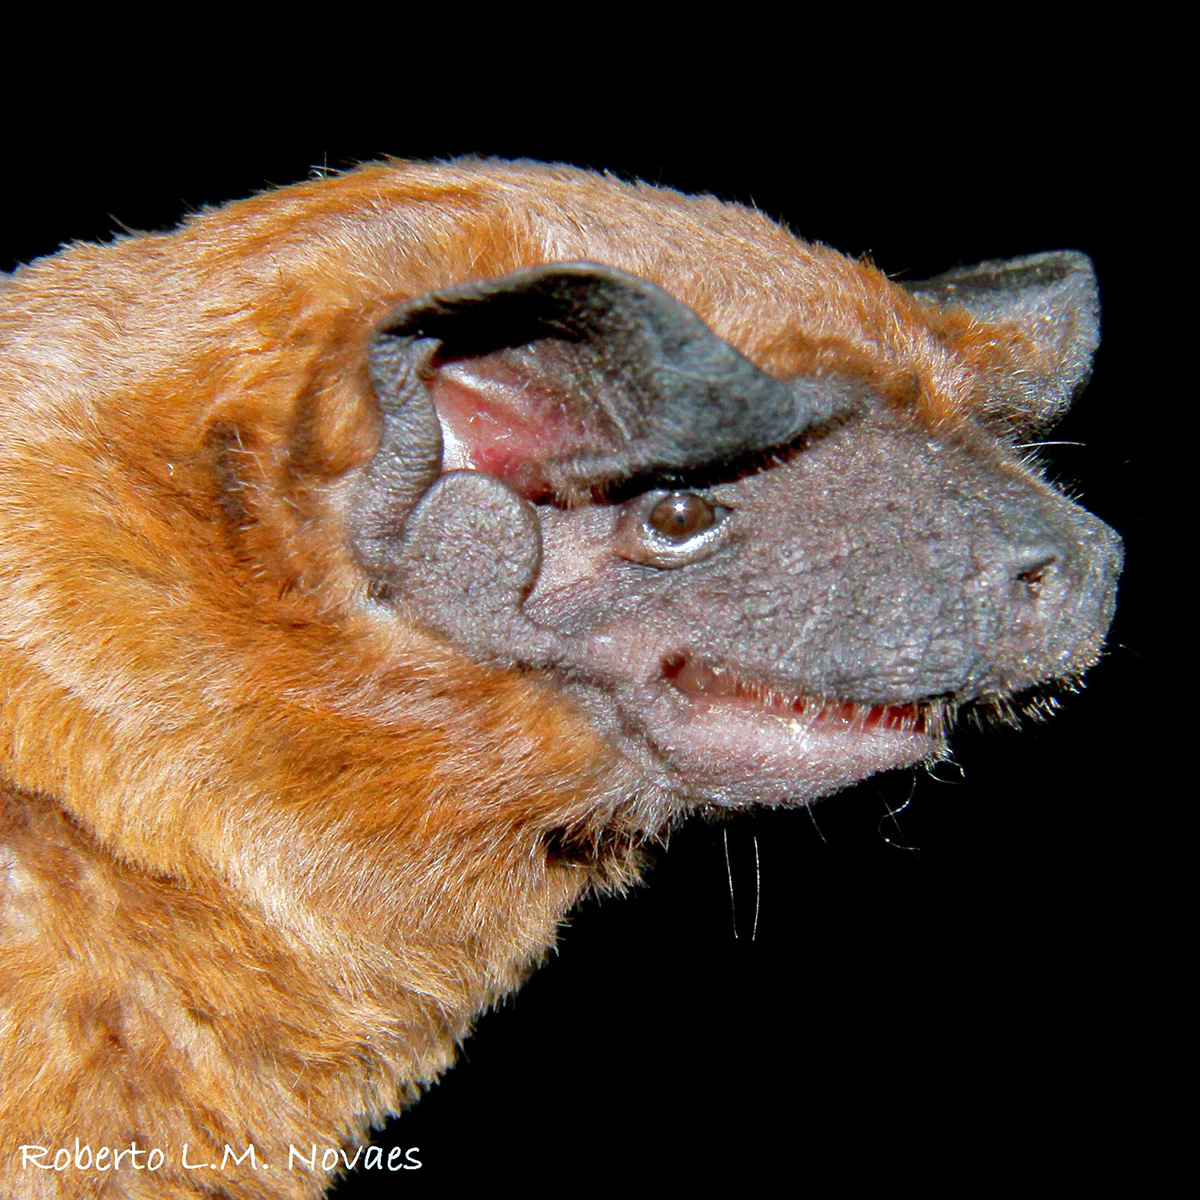 Cinnamon Dog-Faced Bat (Cynomops abrasus) Фото №3